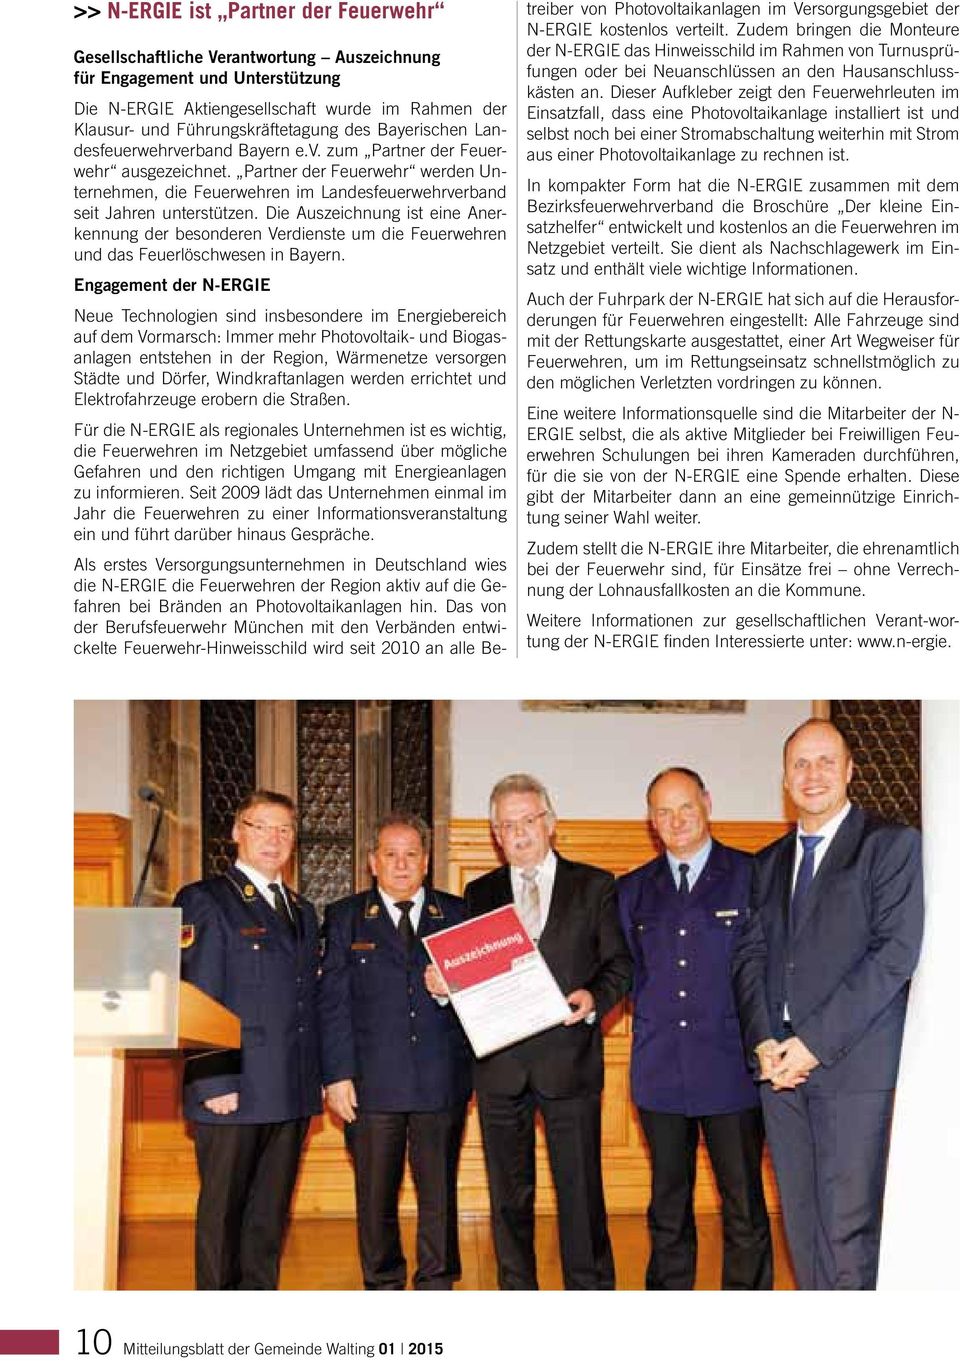 Bayerischen Landesfeuerwehrverband Bayern e.v. zum Partner der Feuerwehr ausgezeichnet. Partner der Feuerwehr werden Unternehmen, die Feuerwehren im Landesfeuerwehrverband seit Jahren unterstützen.